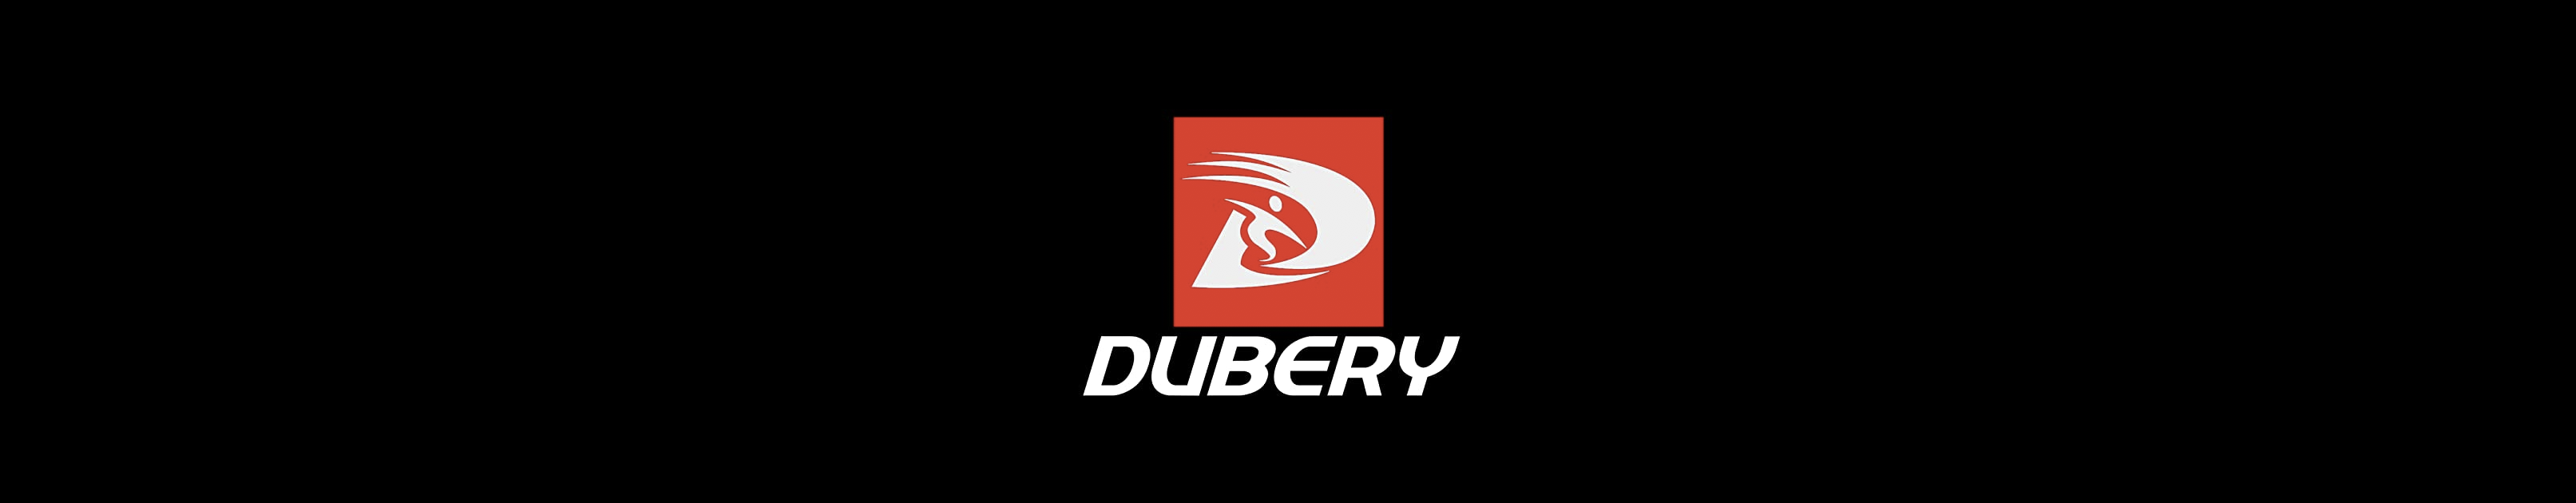 Dubery sunglasses Canada Inc.